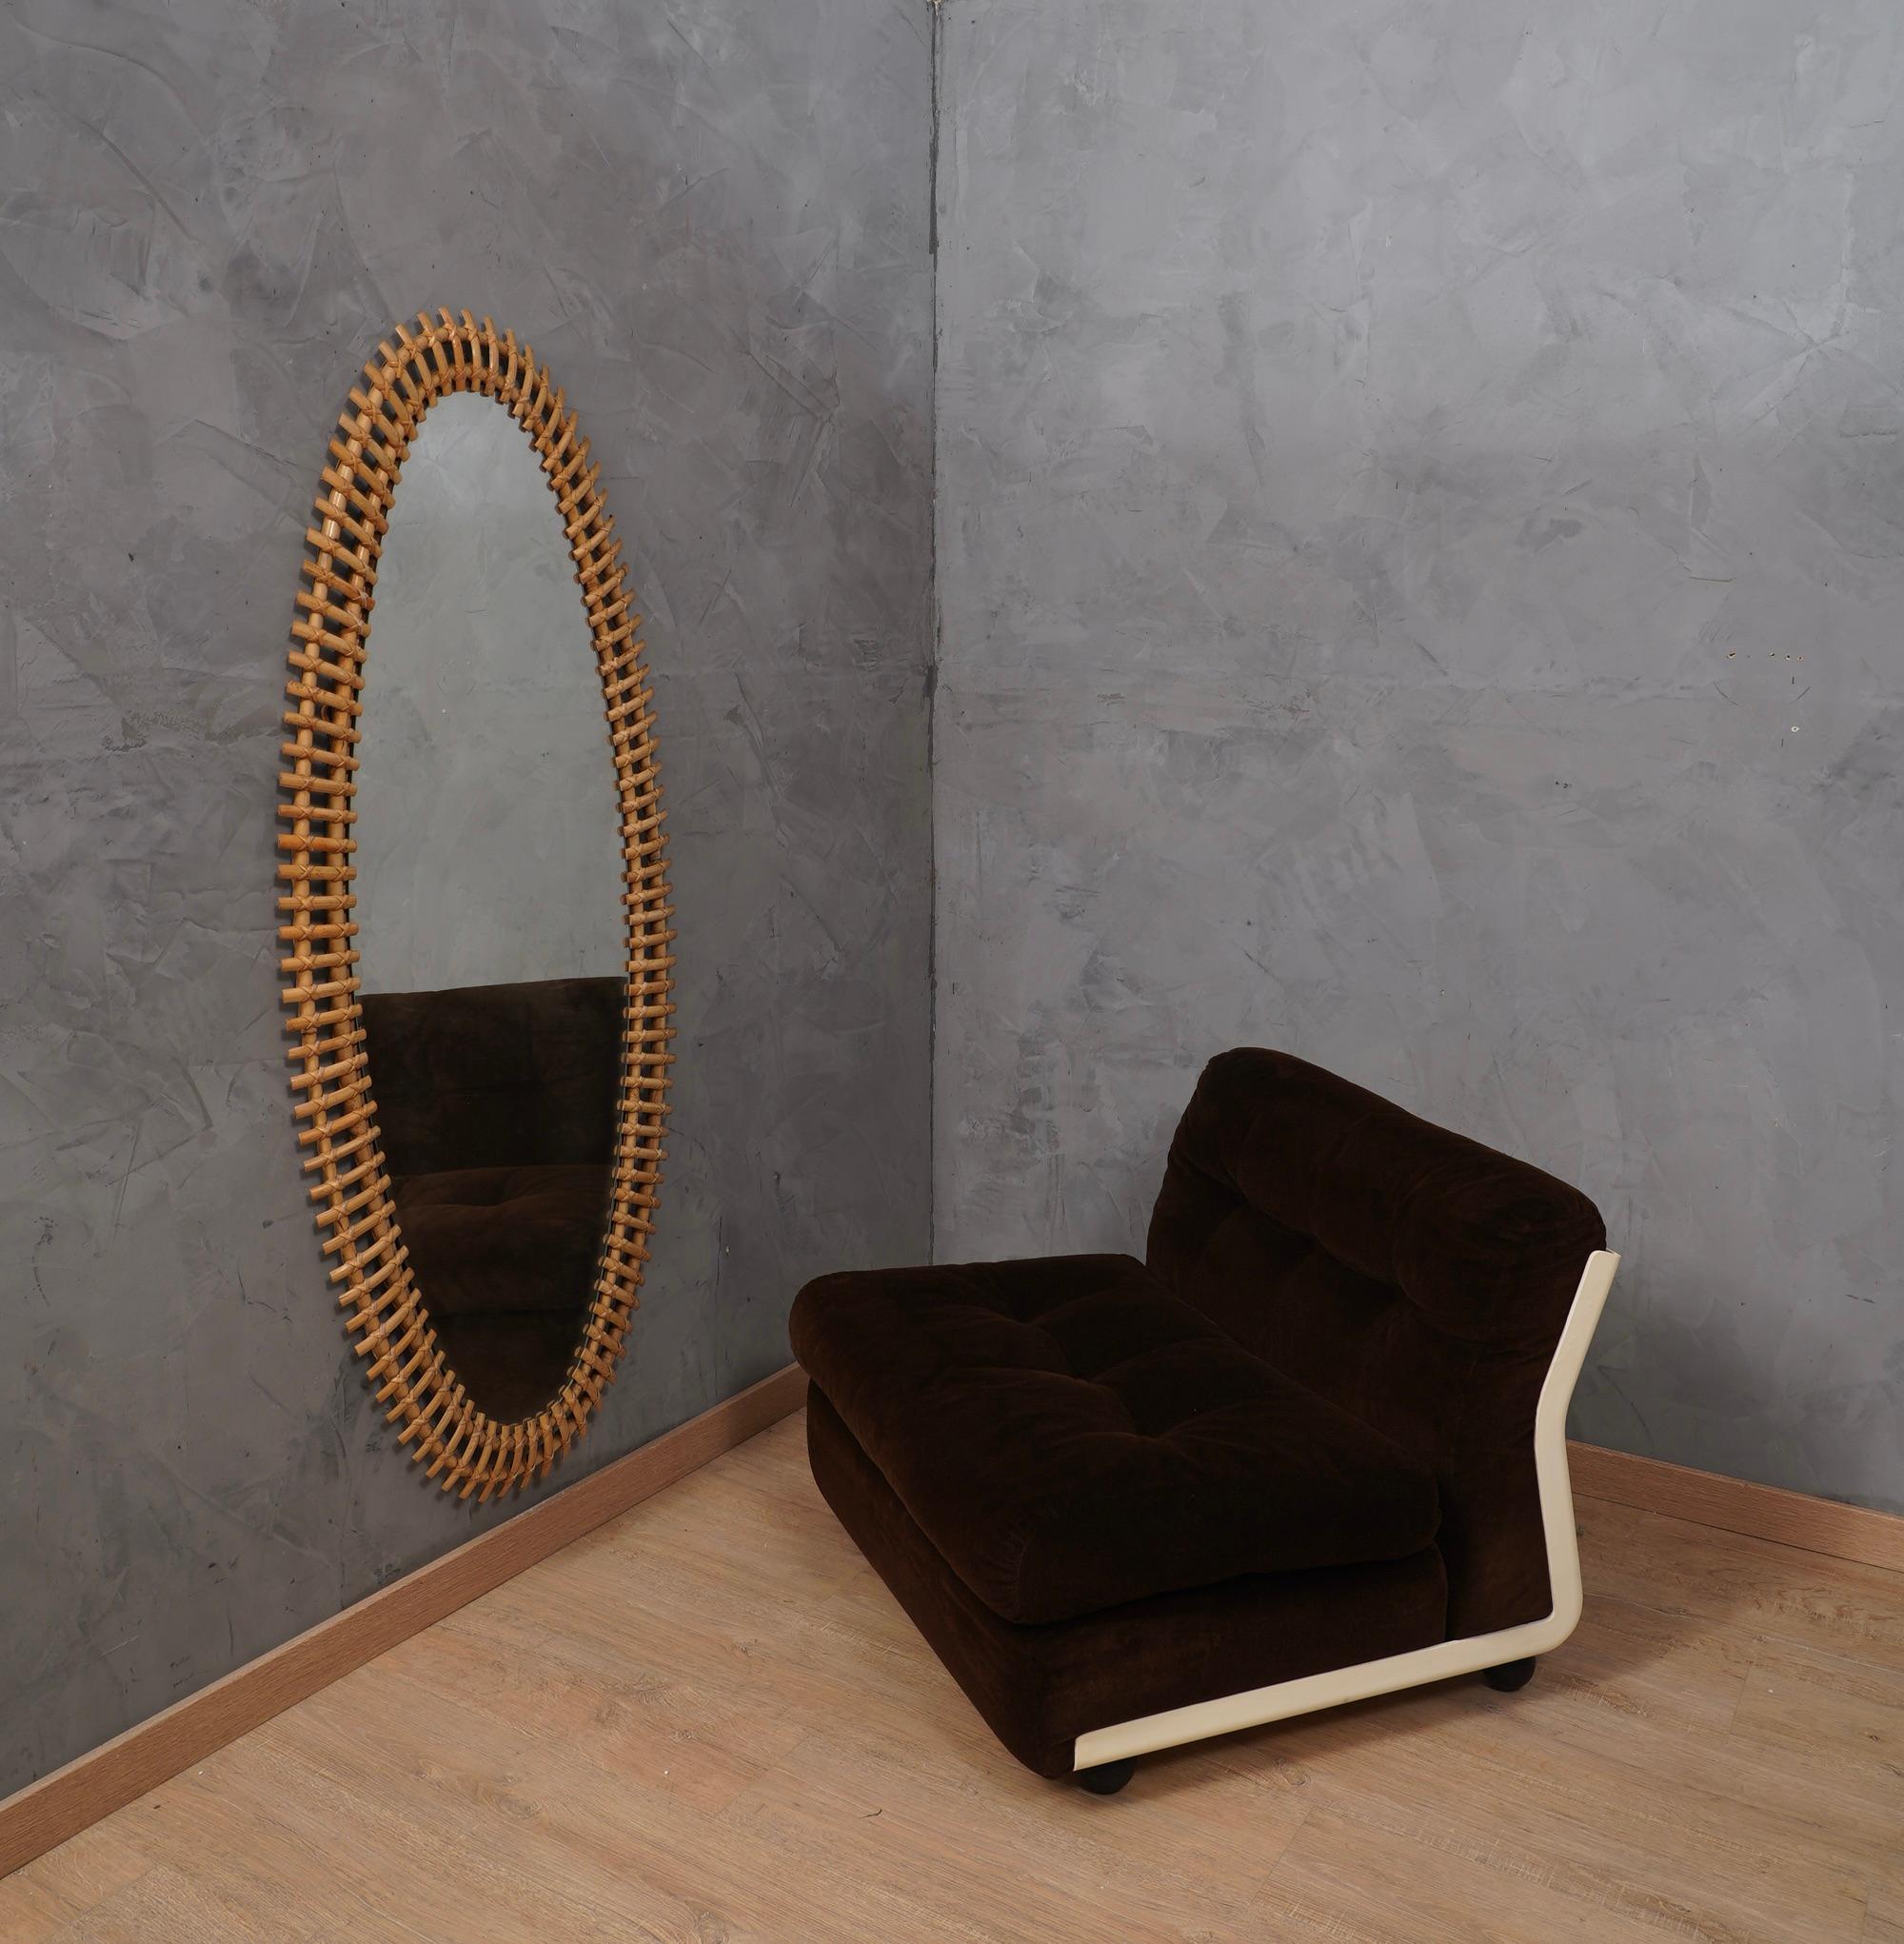 Miroir ovale en bambou et reliures en canne indienne conçu par le designer néerlandais Olaf Von Bohr pour la société Bonacina dans les années 1960. Elegant et polyvalent, ce miroir présente un design très léger et linéaire. Une union entre